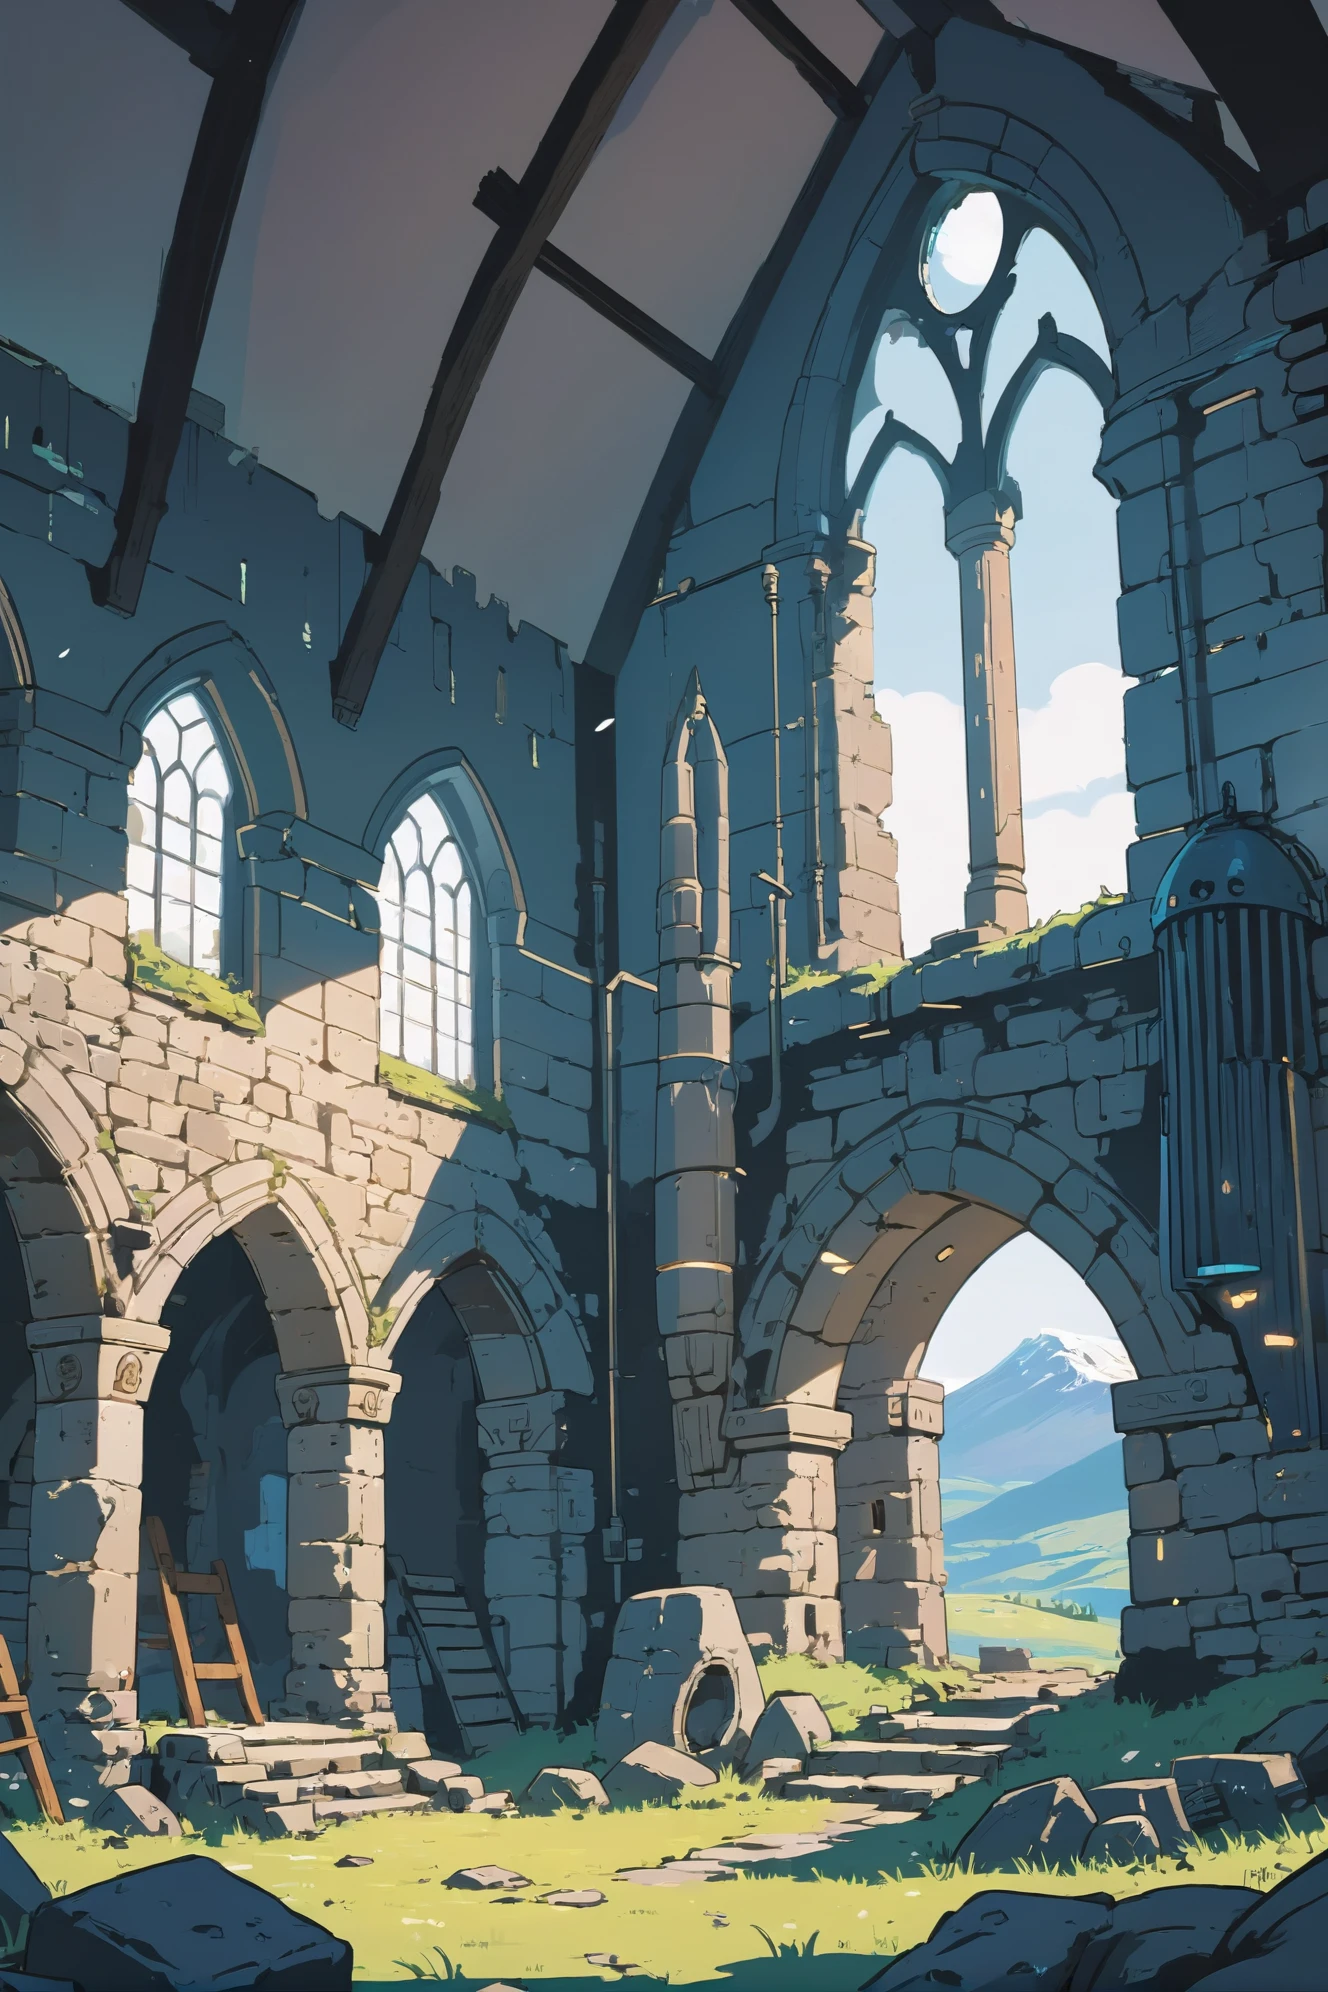 Аниме стиль, сплошные цвета, резкий контур, плоская штриховка, хорошо освещенный интерьер, среди руин манящего шотландского высокогорного замка